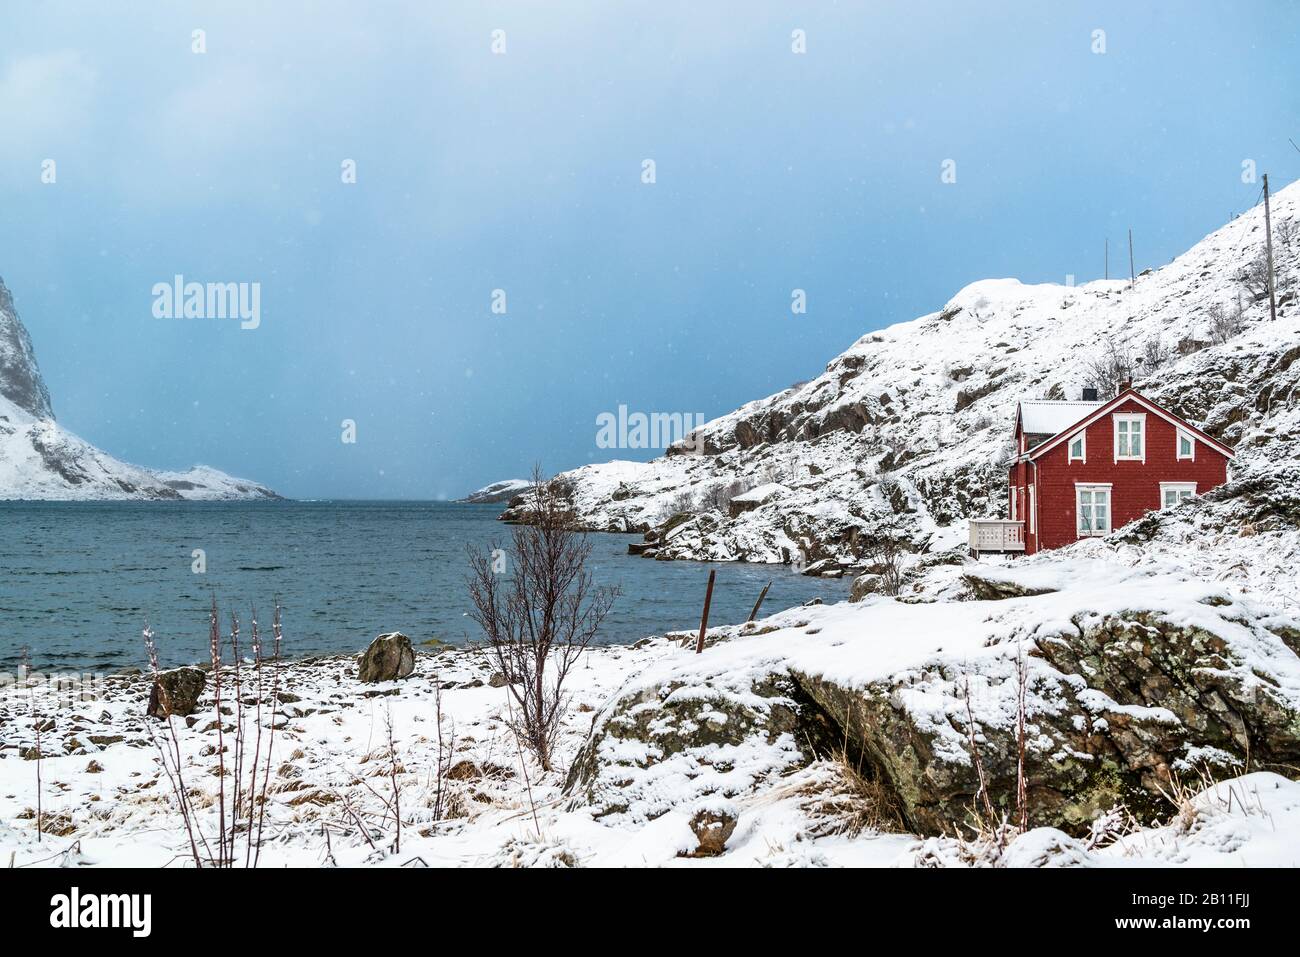 Fishermen's cabins in Straume Bay, Vesterålen, Norway Stock Photo